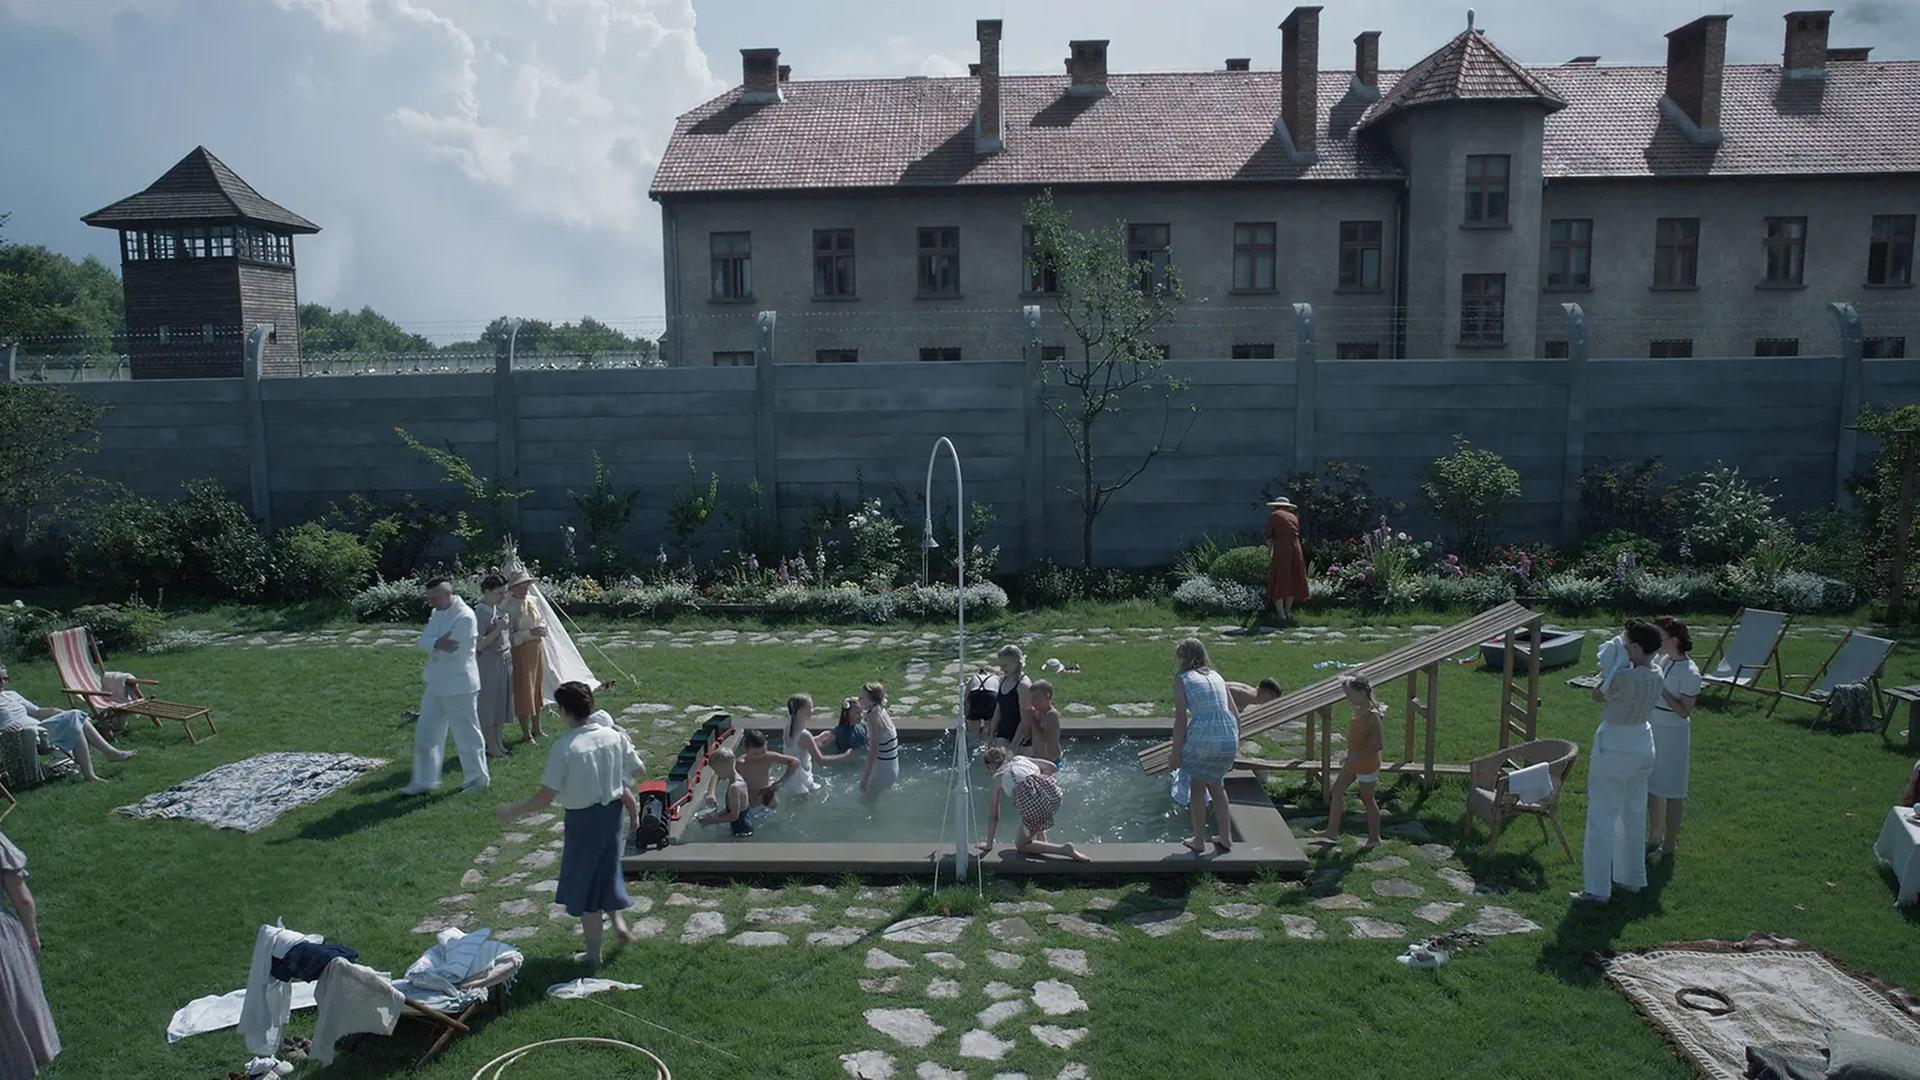 Filmszene aus "Zone of Interest". Zu sehen ist in einer Totale der Garten der Familie Höß mit Pflanzen und einem Pool, in dem Kinder fröhlich spielen. Im Hintergrund eine Mauer und ein Wachturm des sogenannten Stammlagers in Auschwitz.